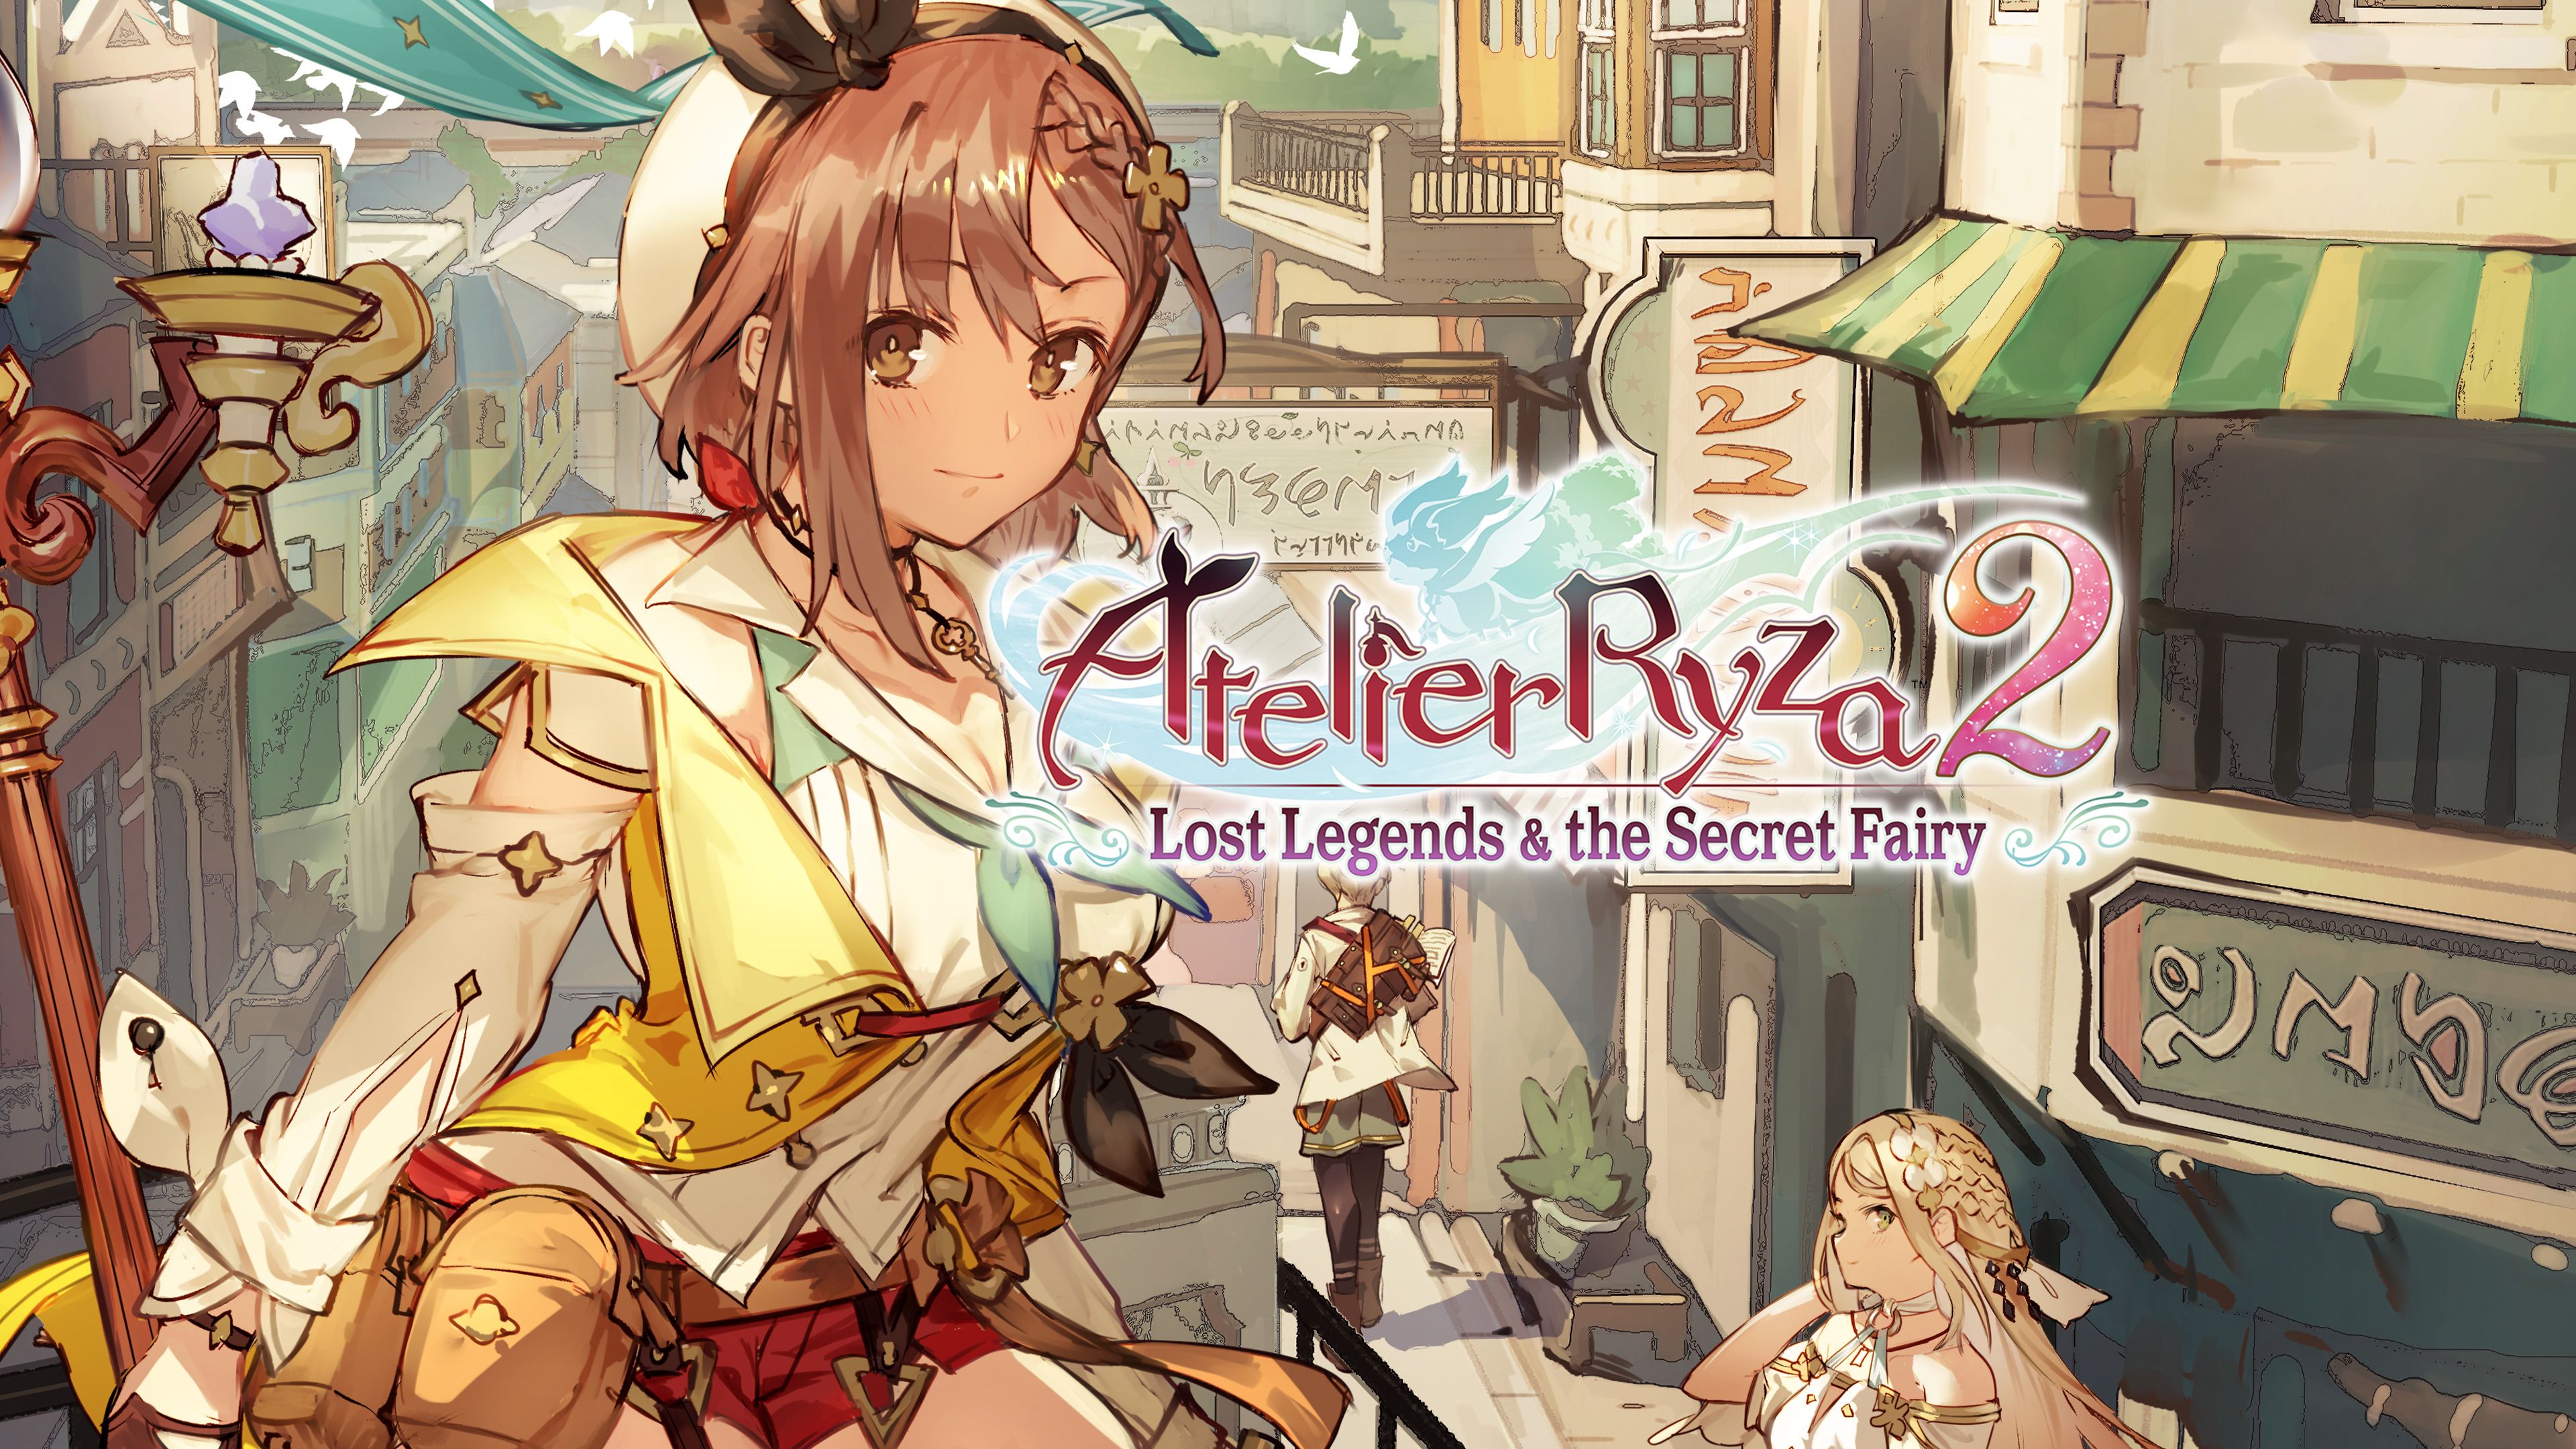 Популярные заставки и фоны Atelier Ryza 2: Утраченные Легенды И Тайная Фея на компьютер